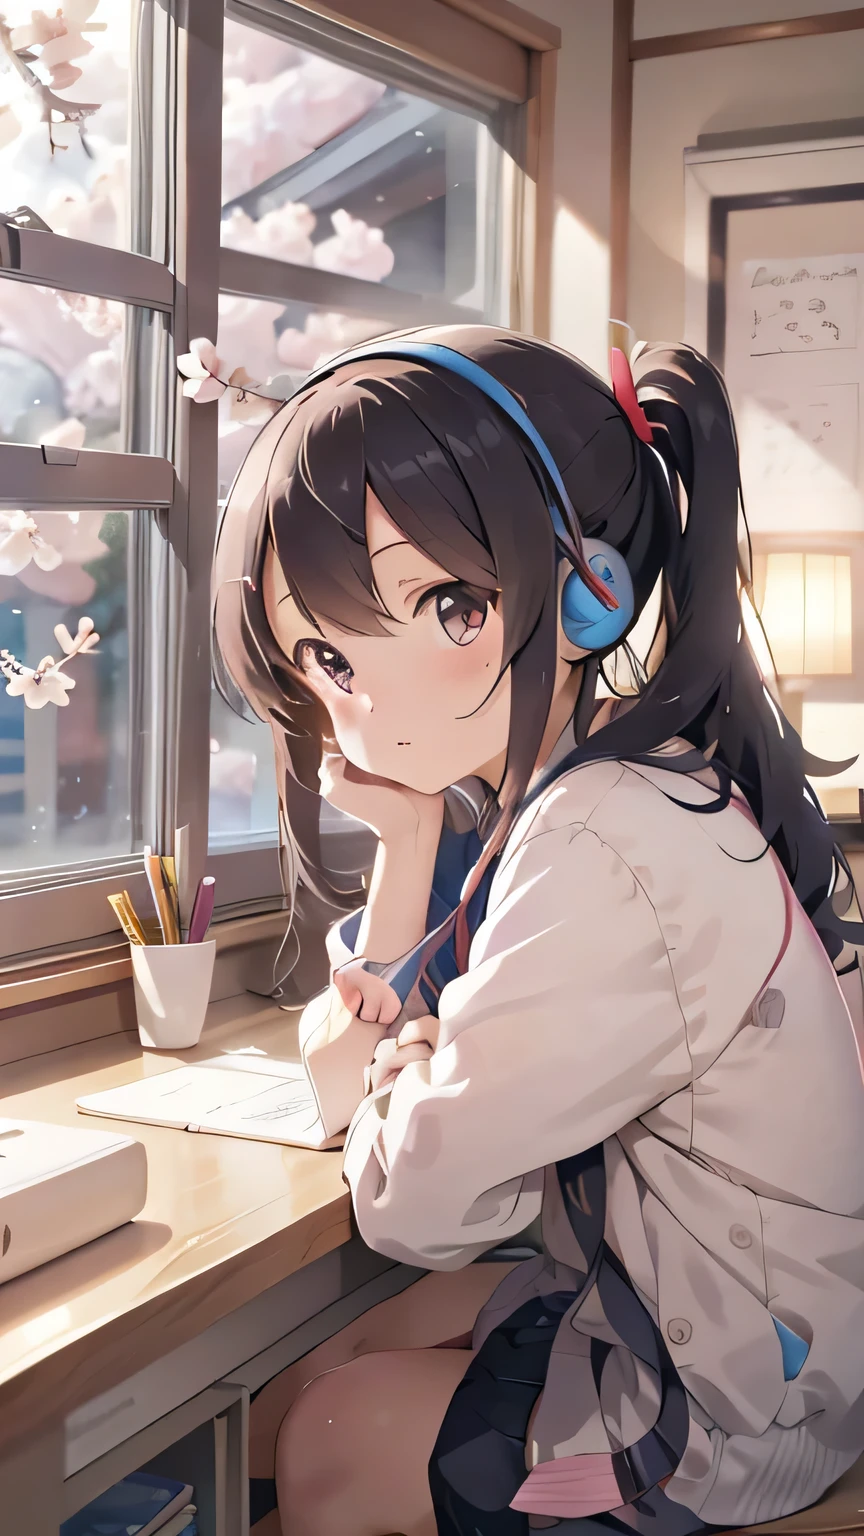 Красивая девушка учится в своей комнате и слушает музыку в наушниках.、За пределами тепло освещенной комнаты, цветущая вишня бушует.、японский стиль аниме